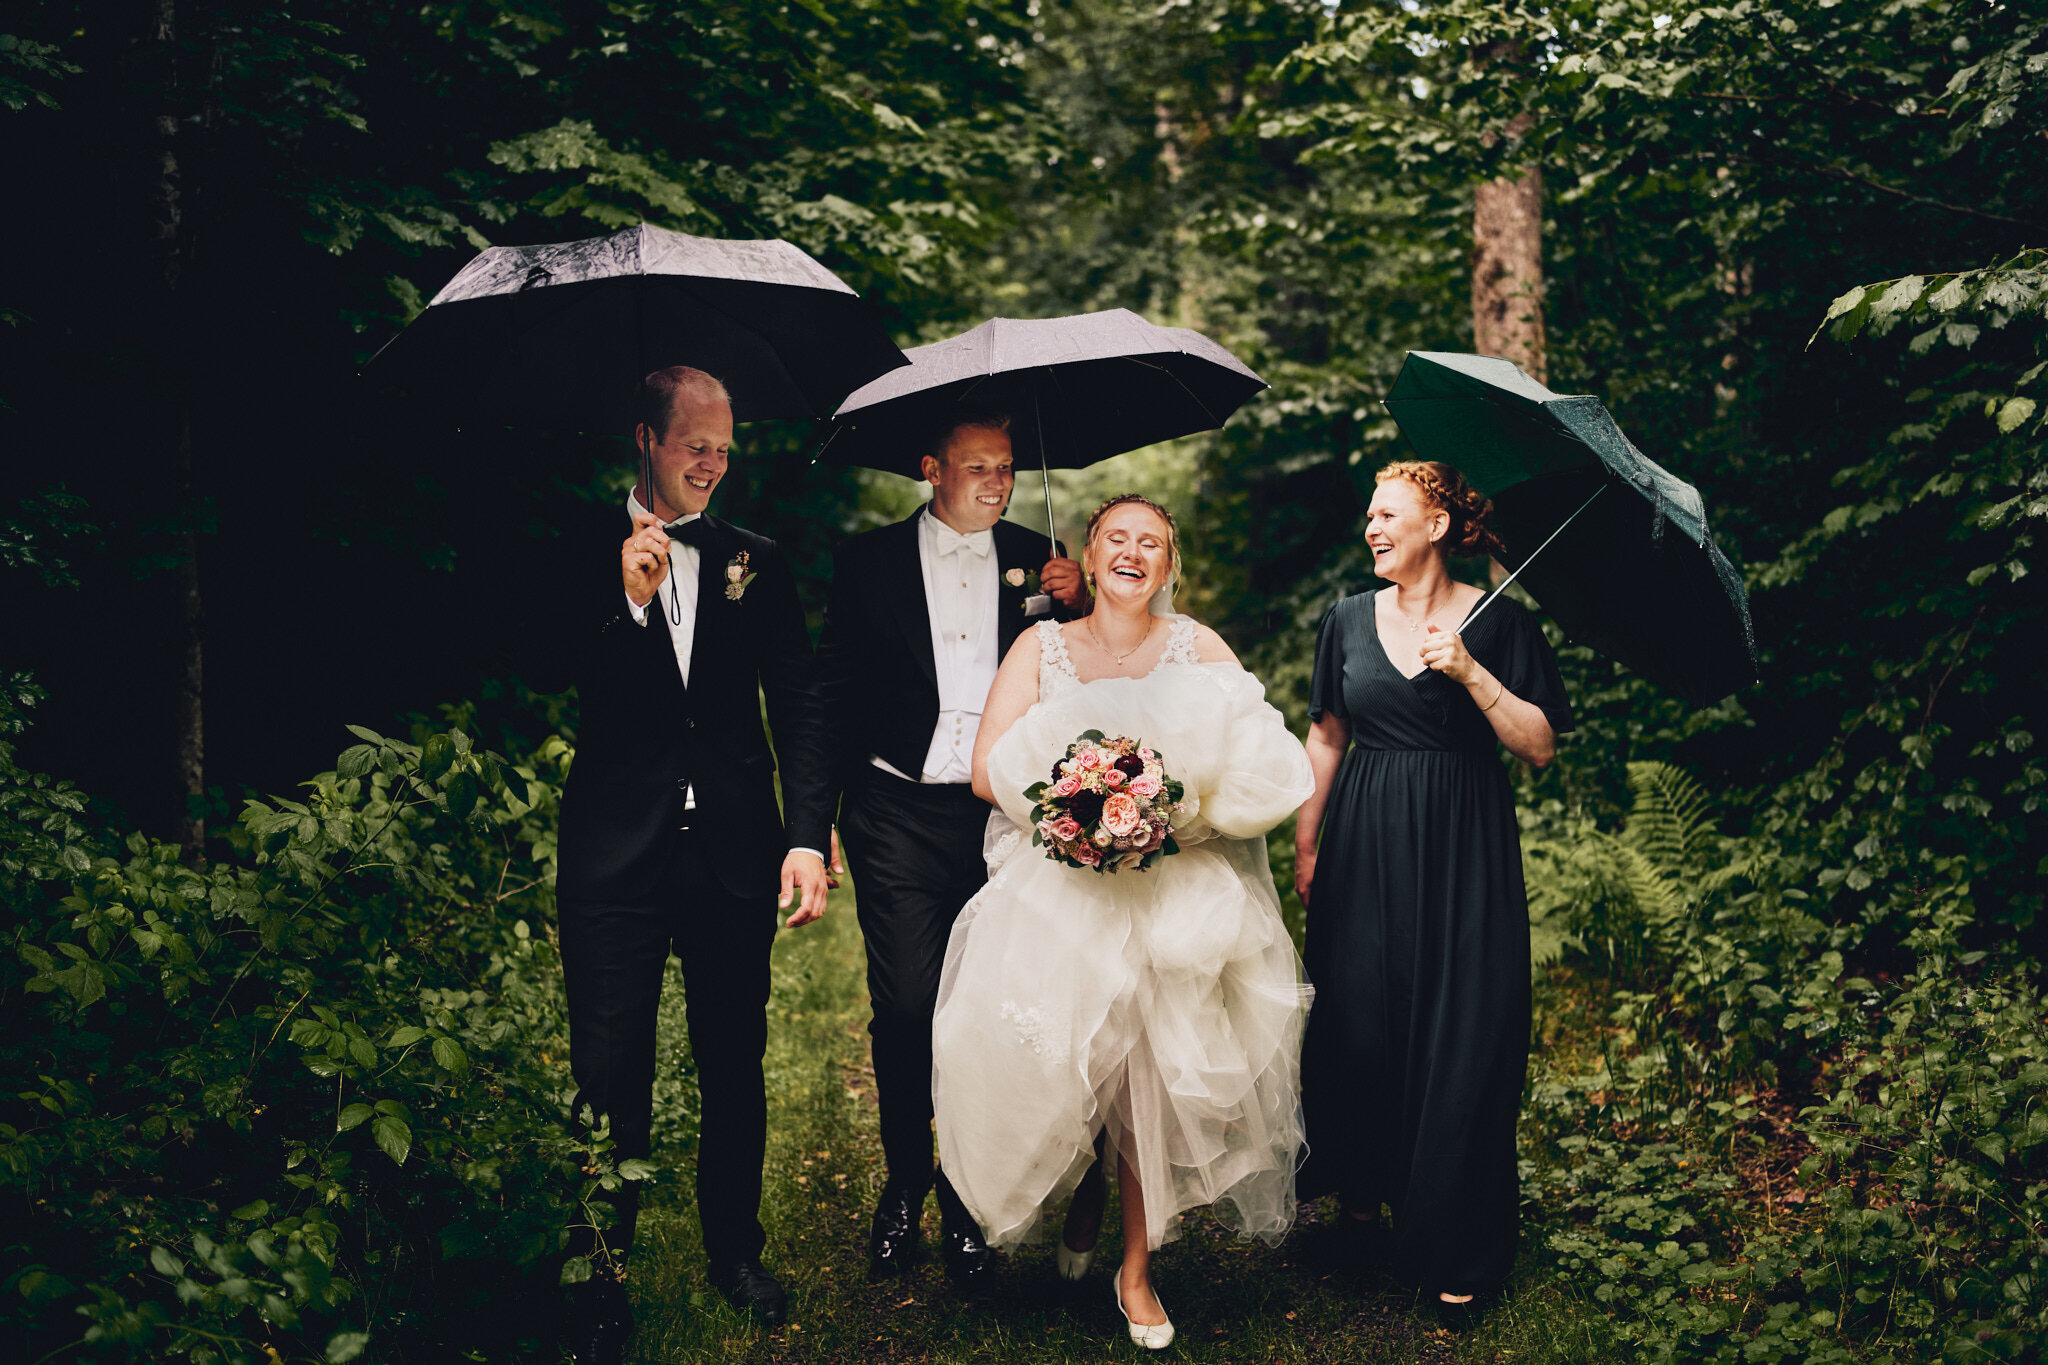   Bryllup i Tønsberg:  Dette var dagen for raske væromslag. Fra fullstendig solstek, sto vi plutselig under åpen himmel. Sommerværet i Norge kan være uforutsigbart, så vi har heldigvis lært oss å ta med paraplyer på de fleste av våre fotograferinger 